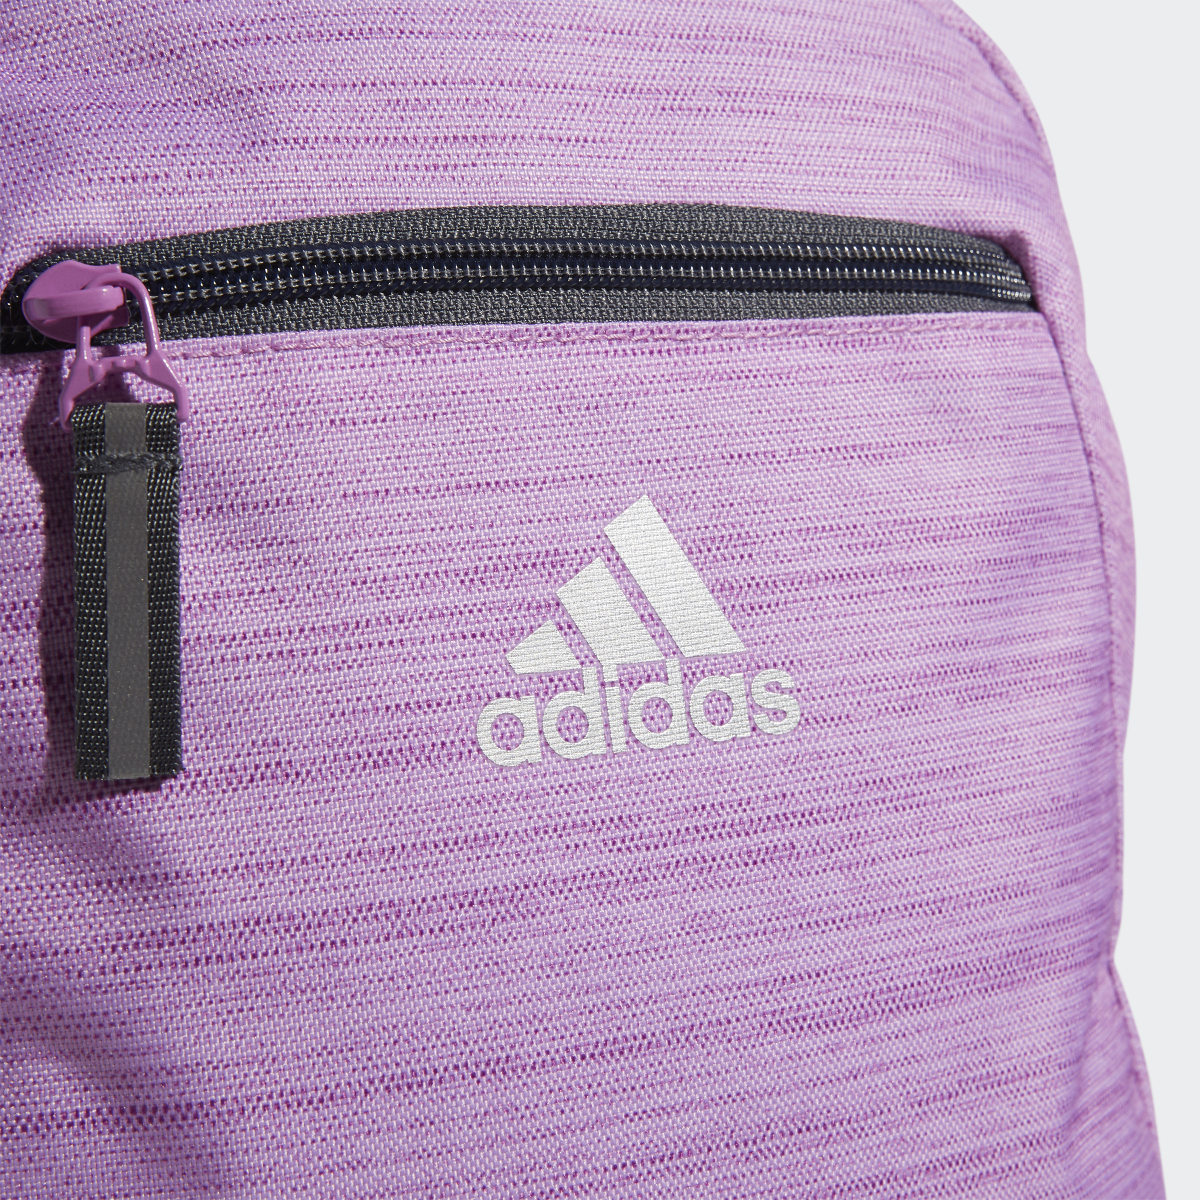 Adidas Foundation 6 Backpack. 7